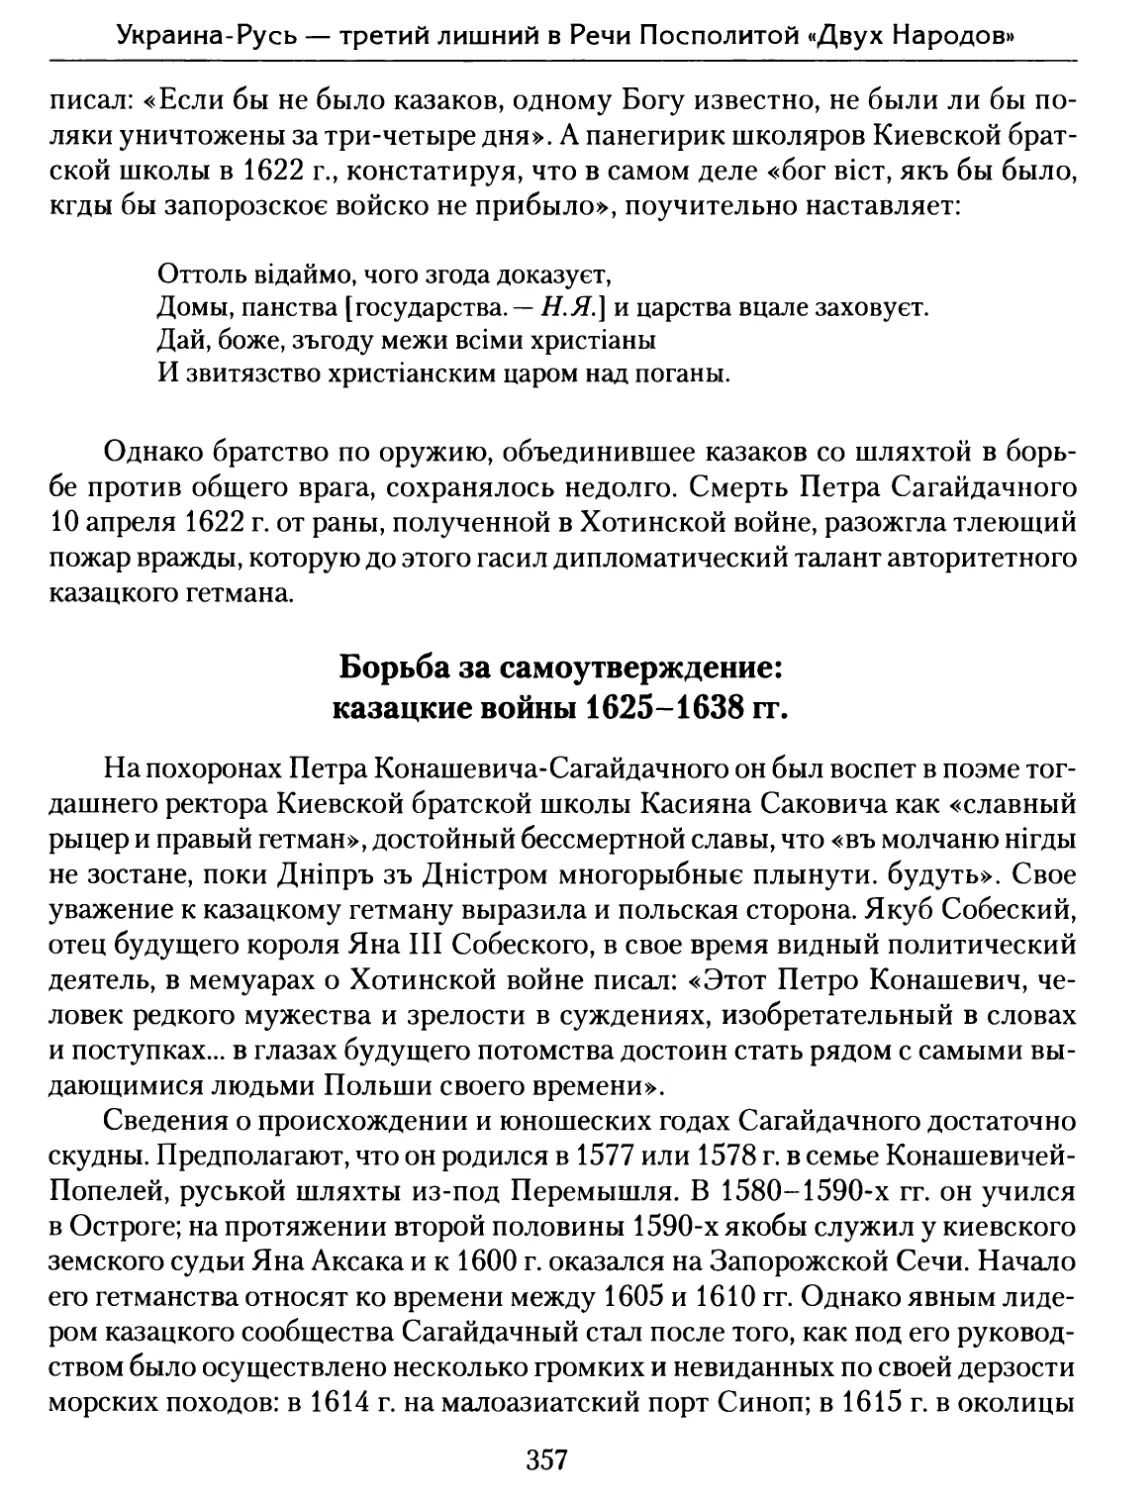 Борьба за самоутверждение: казацкие войны 1625–1638 гг.